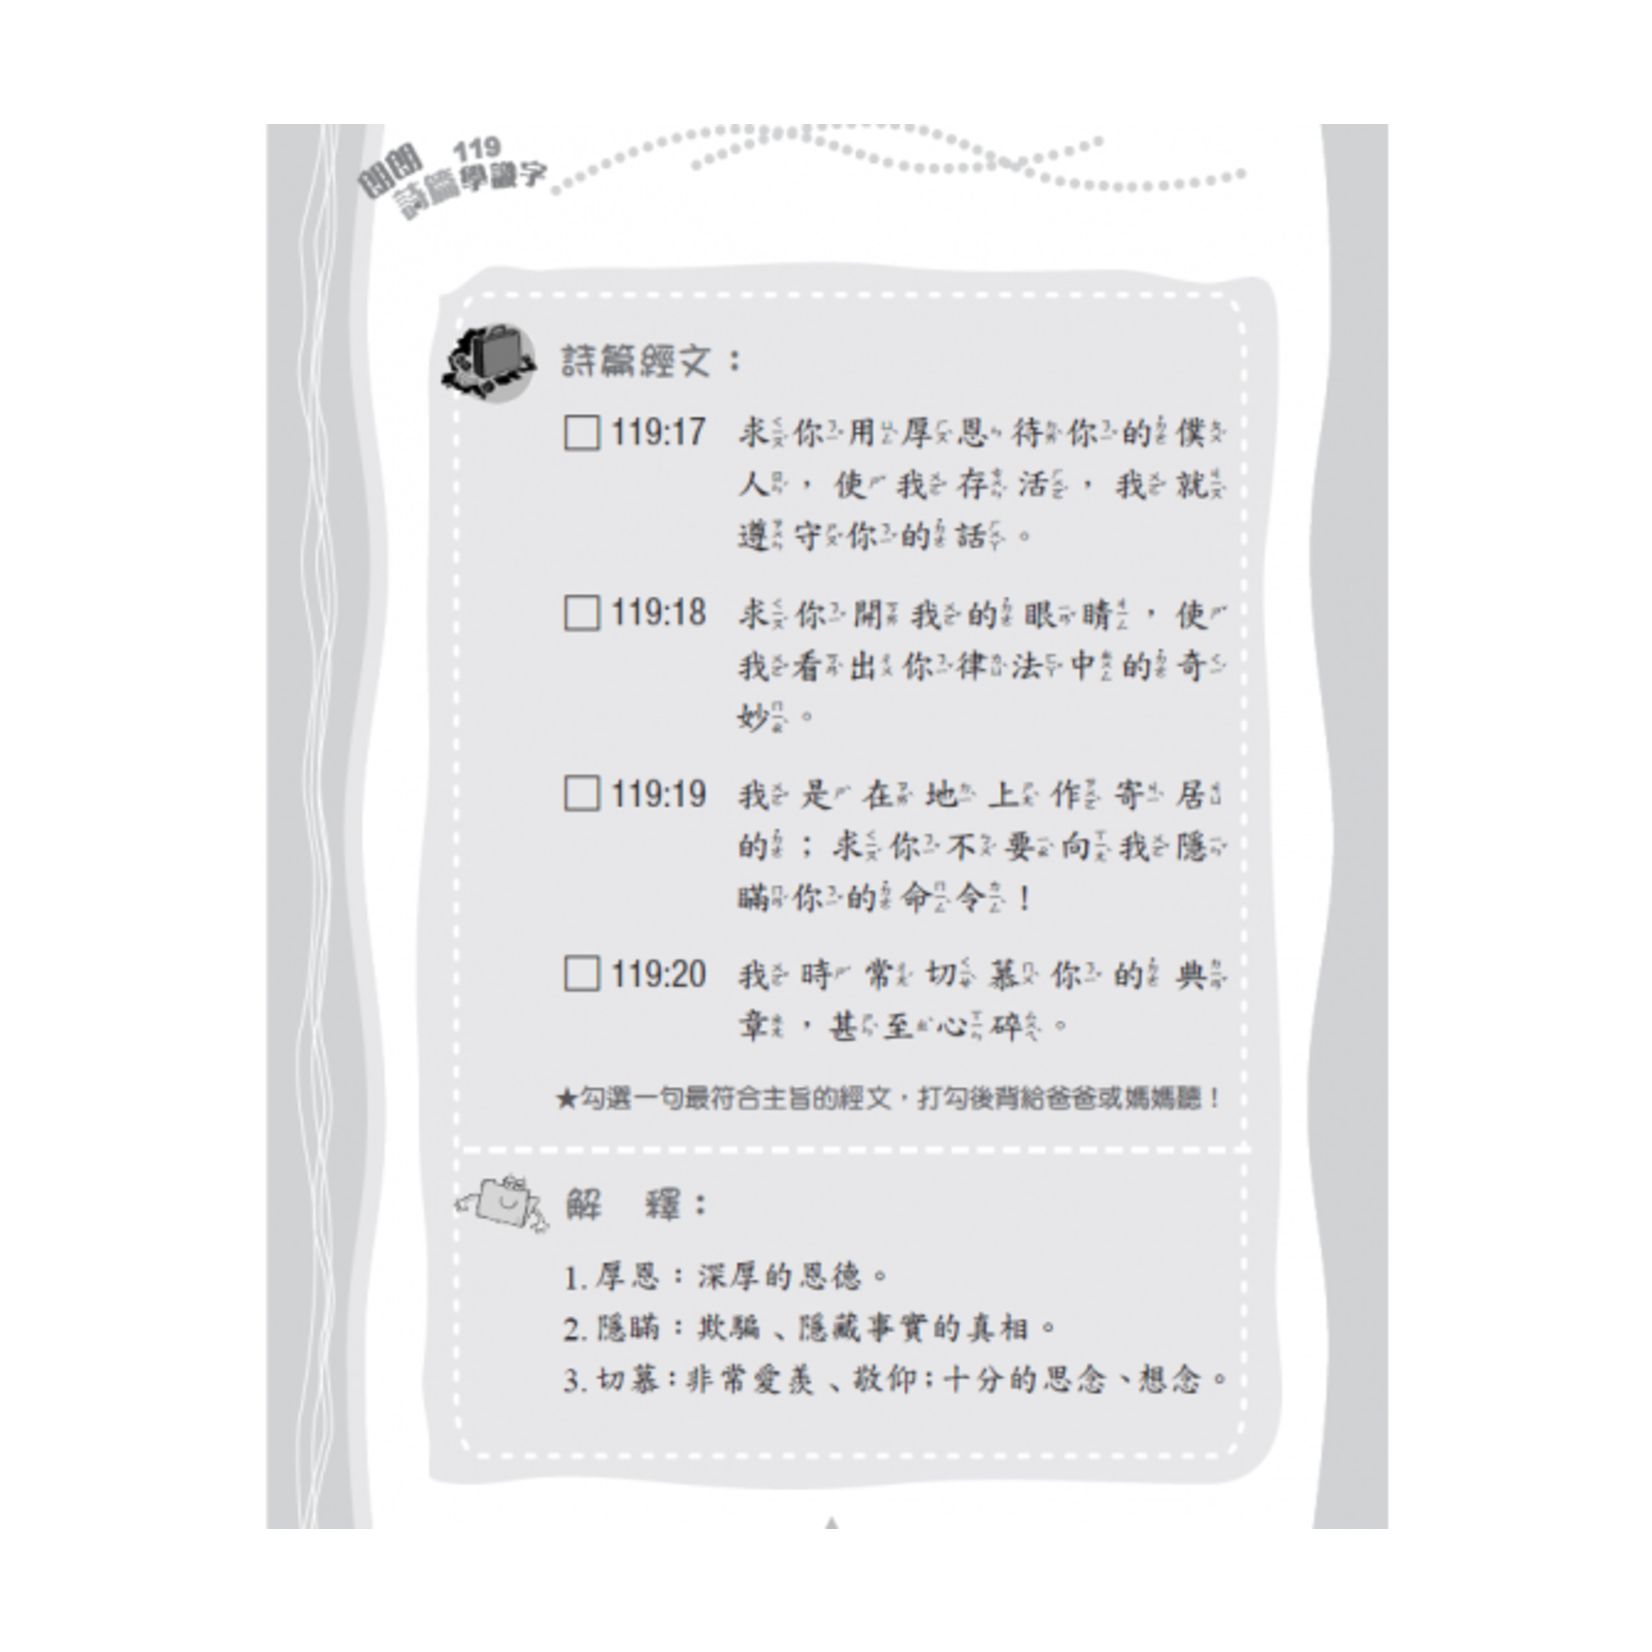 中國主日學協會 China Sunday School Association 朗朗詩篇119學識字